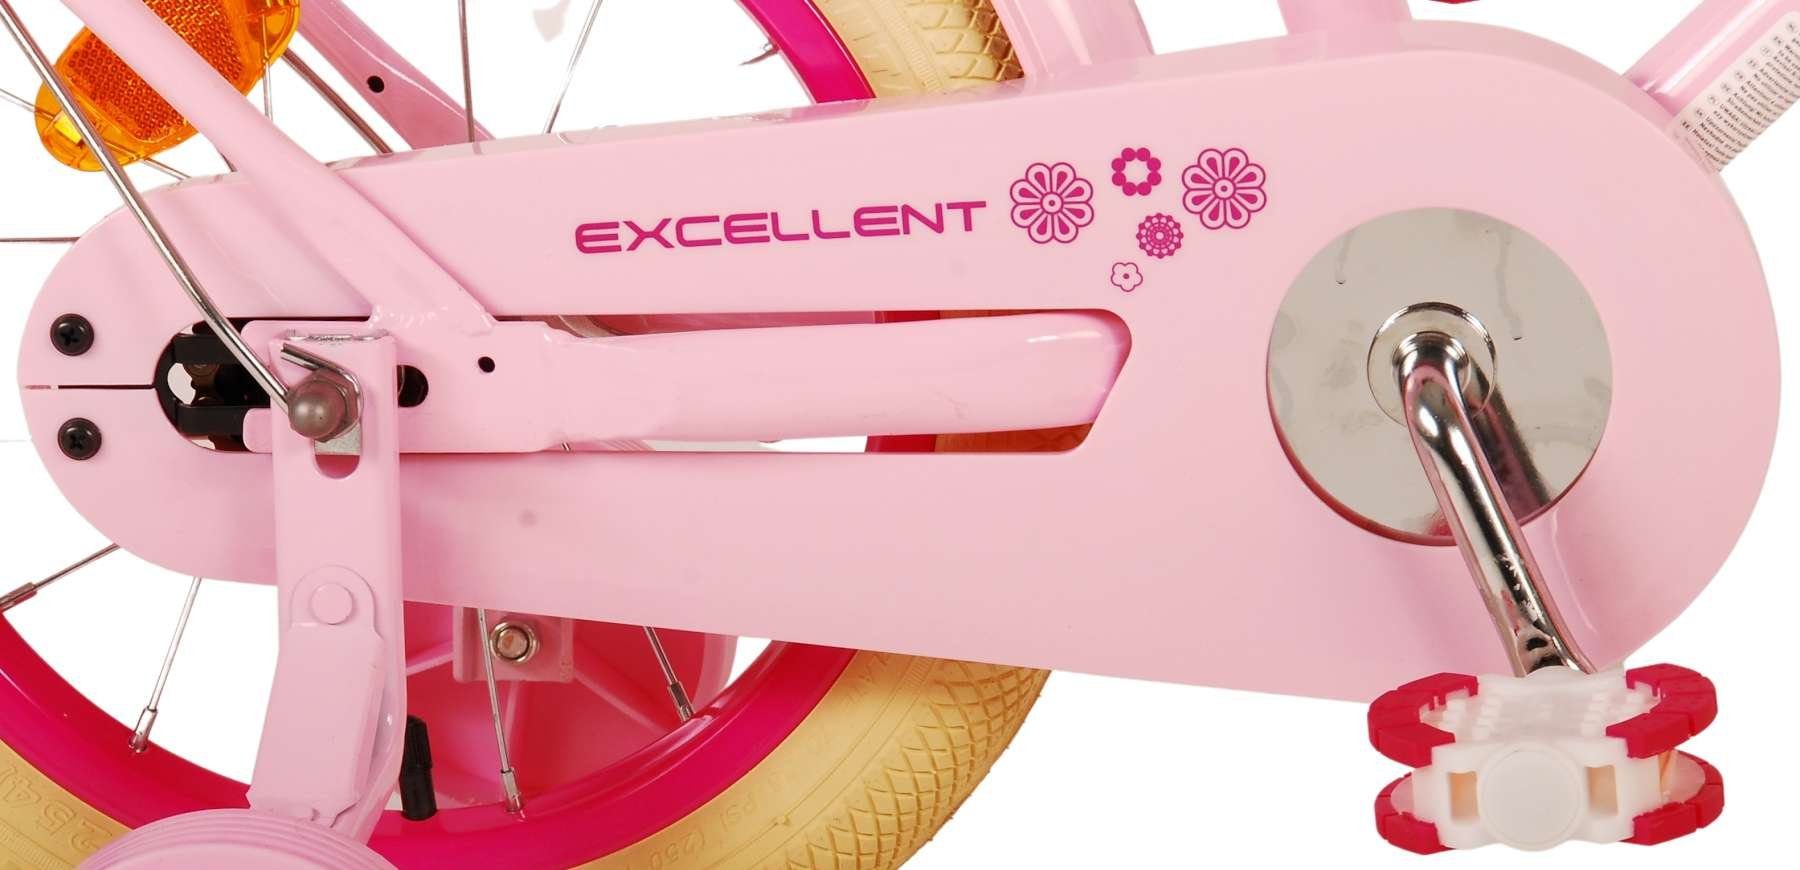 Zoll- - Mädchen rosa - 3 85% 12 Kinderfahrrad bis 60kg 14 Excellent - - oder Rücktrittbremse, Luftbereifung - zusammengebaut, Jahre, Volare 4,5